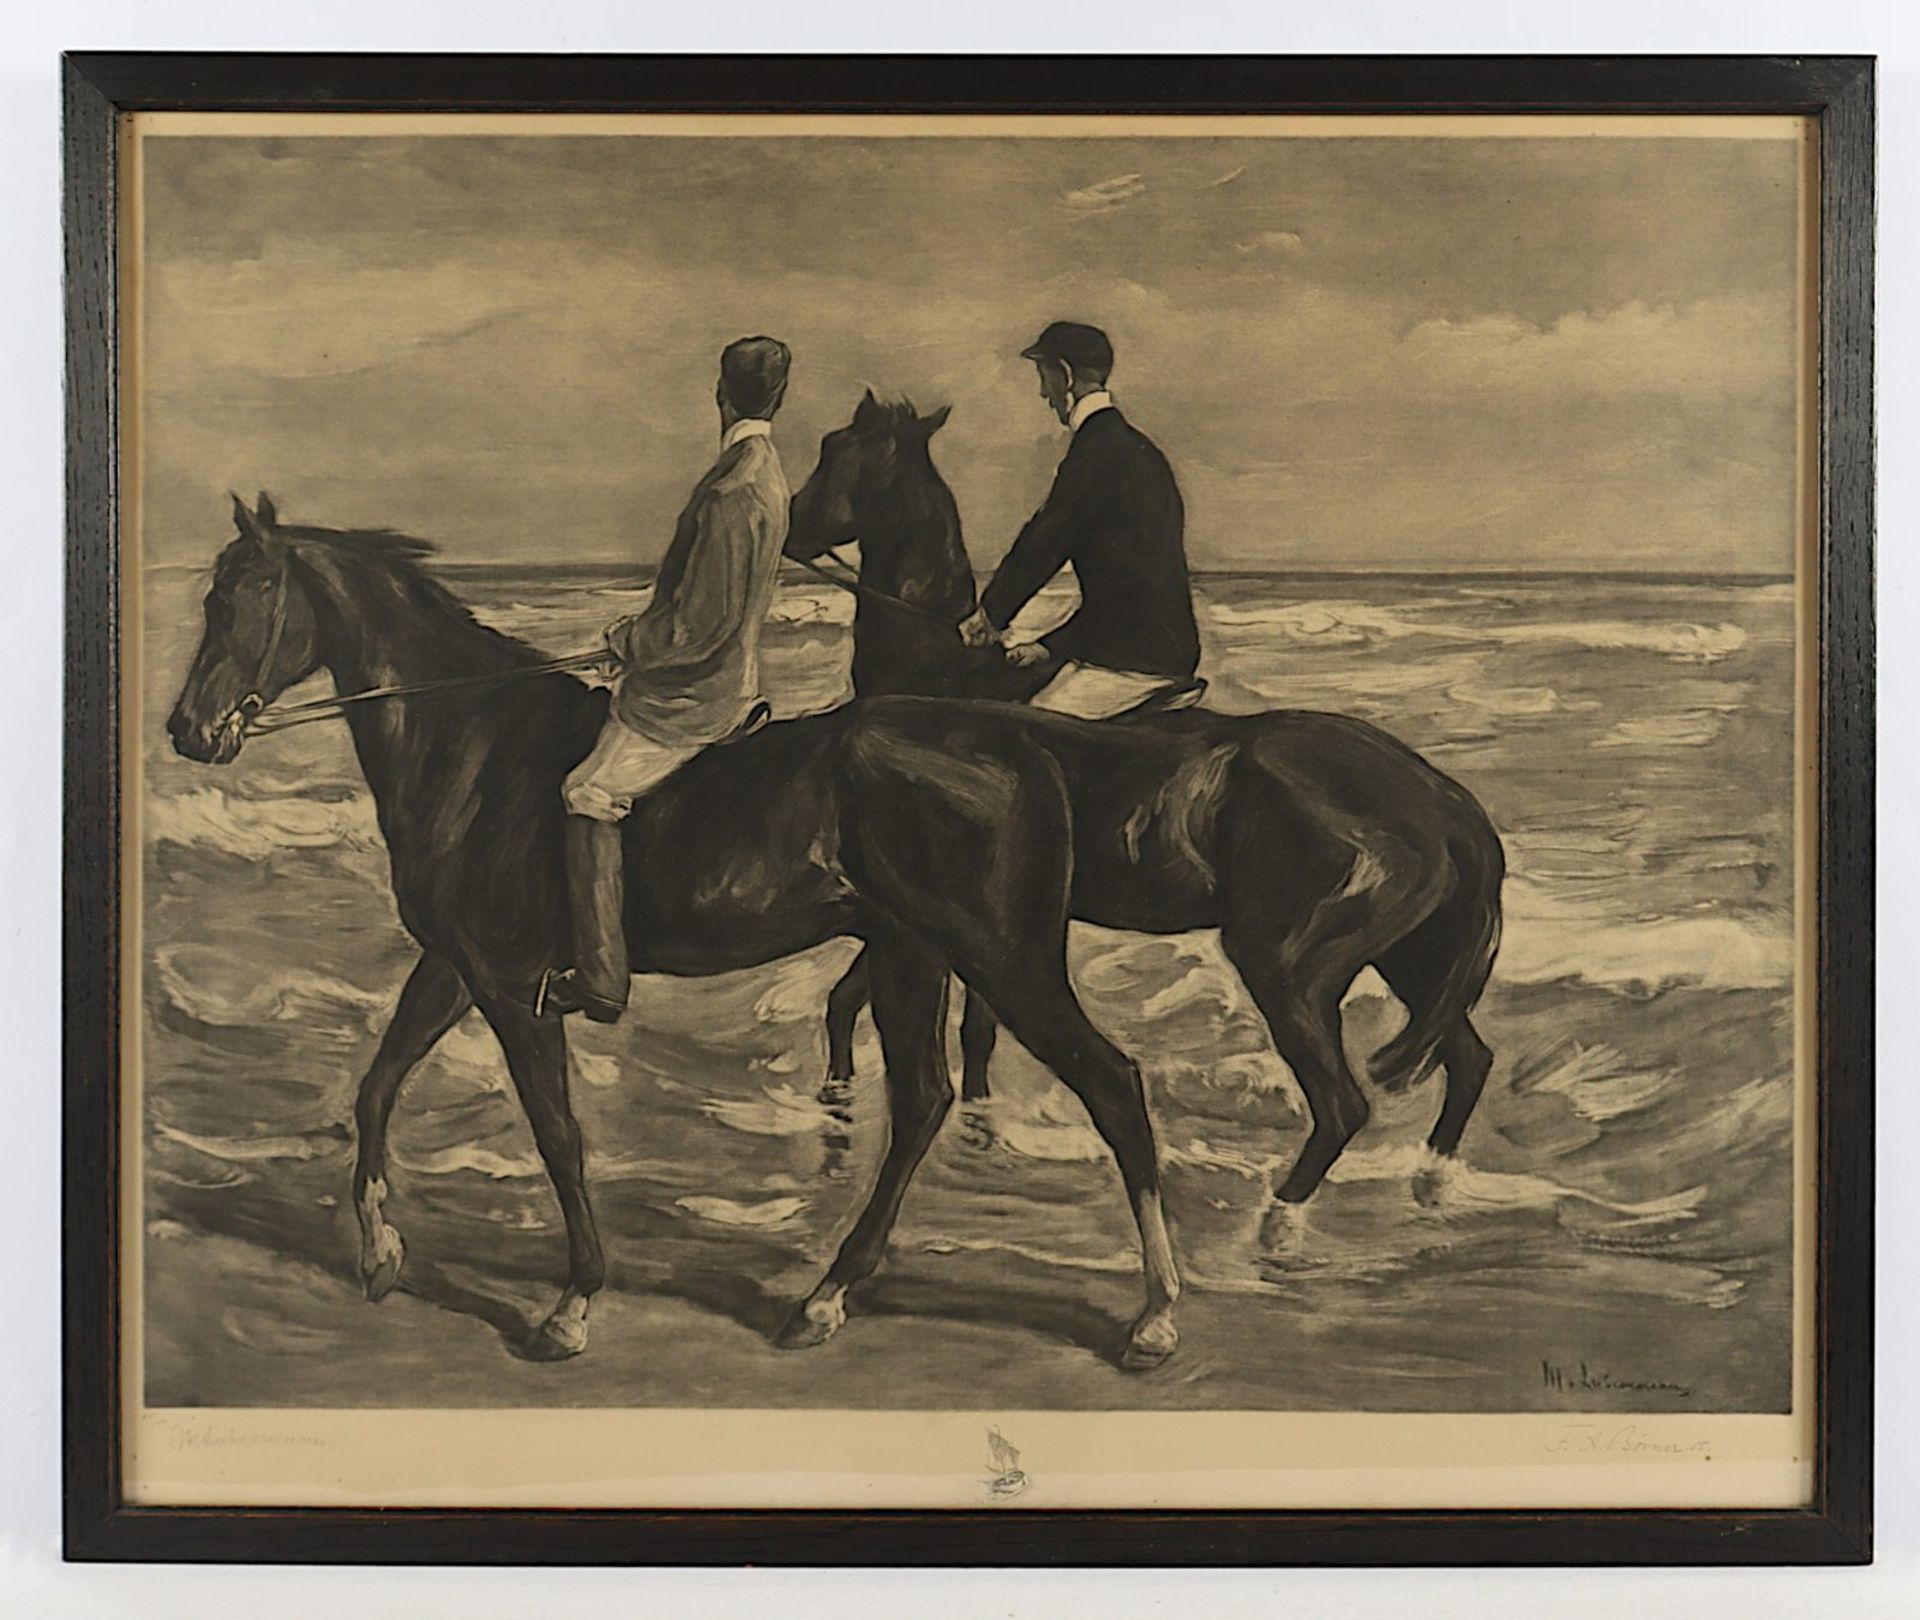 LIEBERMANN, Max, Zwei Reiter am Strand, Litho, R.